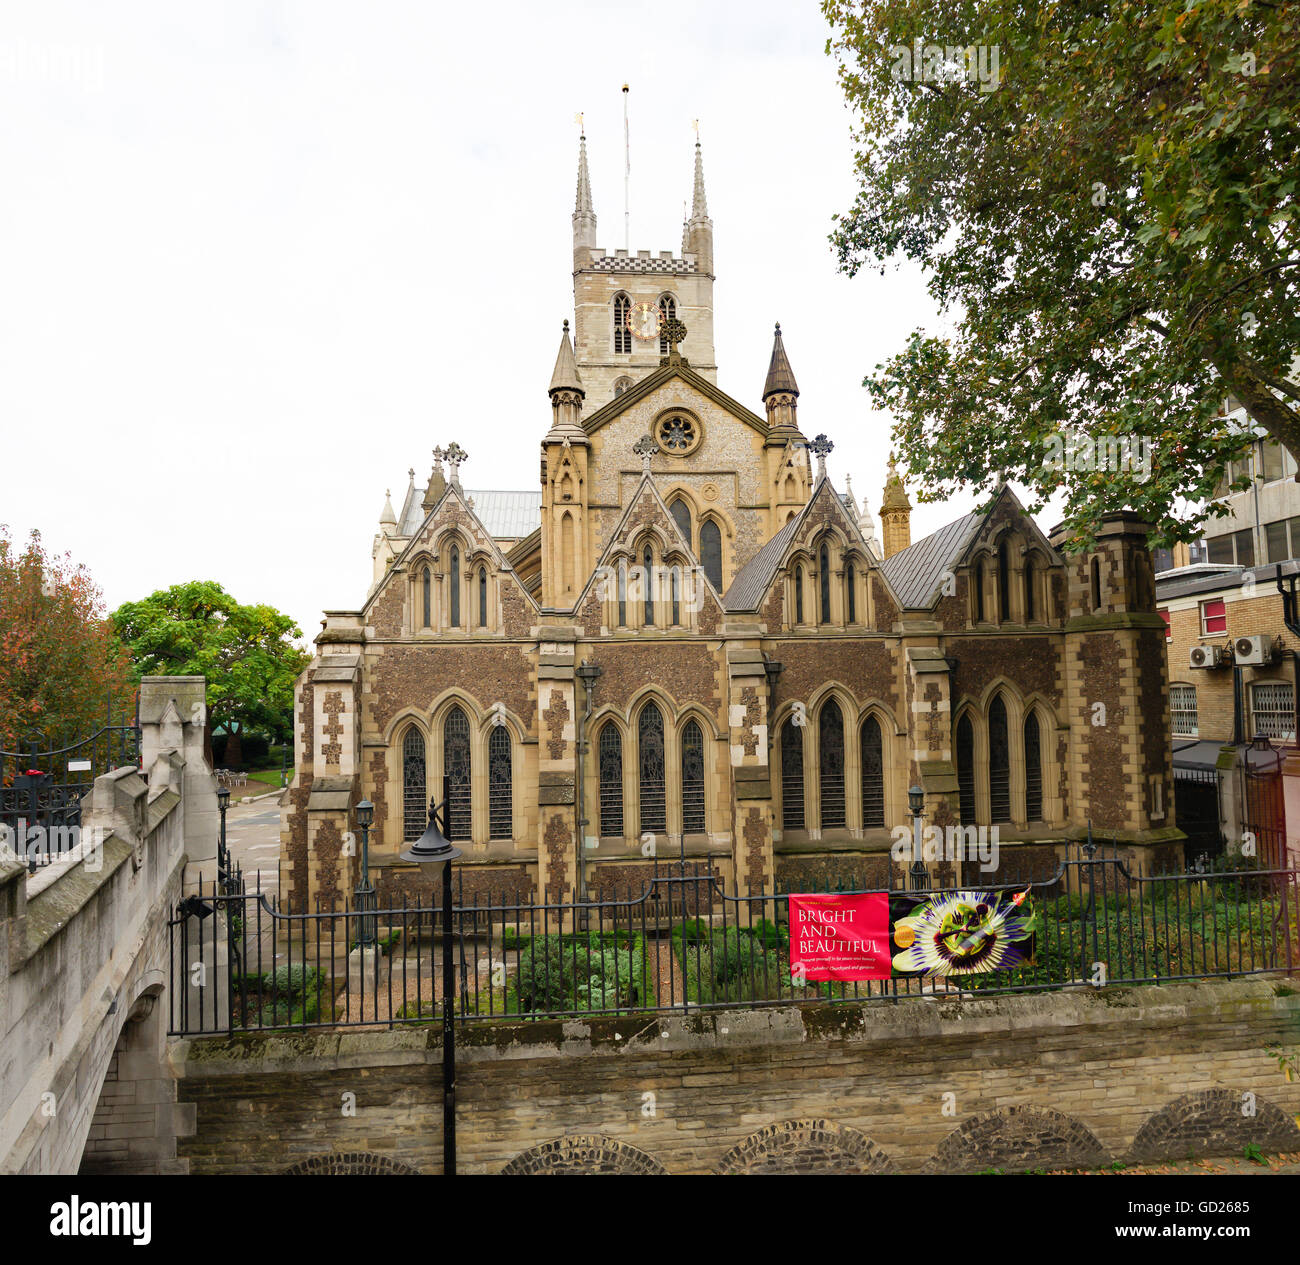 Londra, Inghilterra - 23 ottobre: London Southwark Cathedral chiesa, la chiesa madre della diocesi anglicana di Southwark. Foto Stock